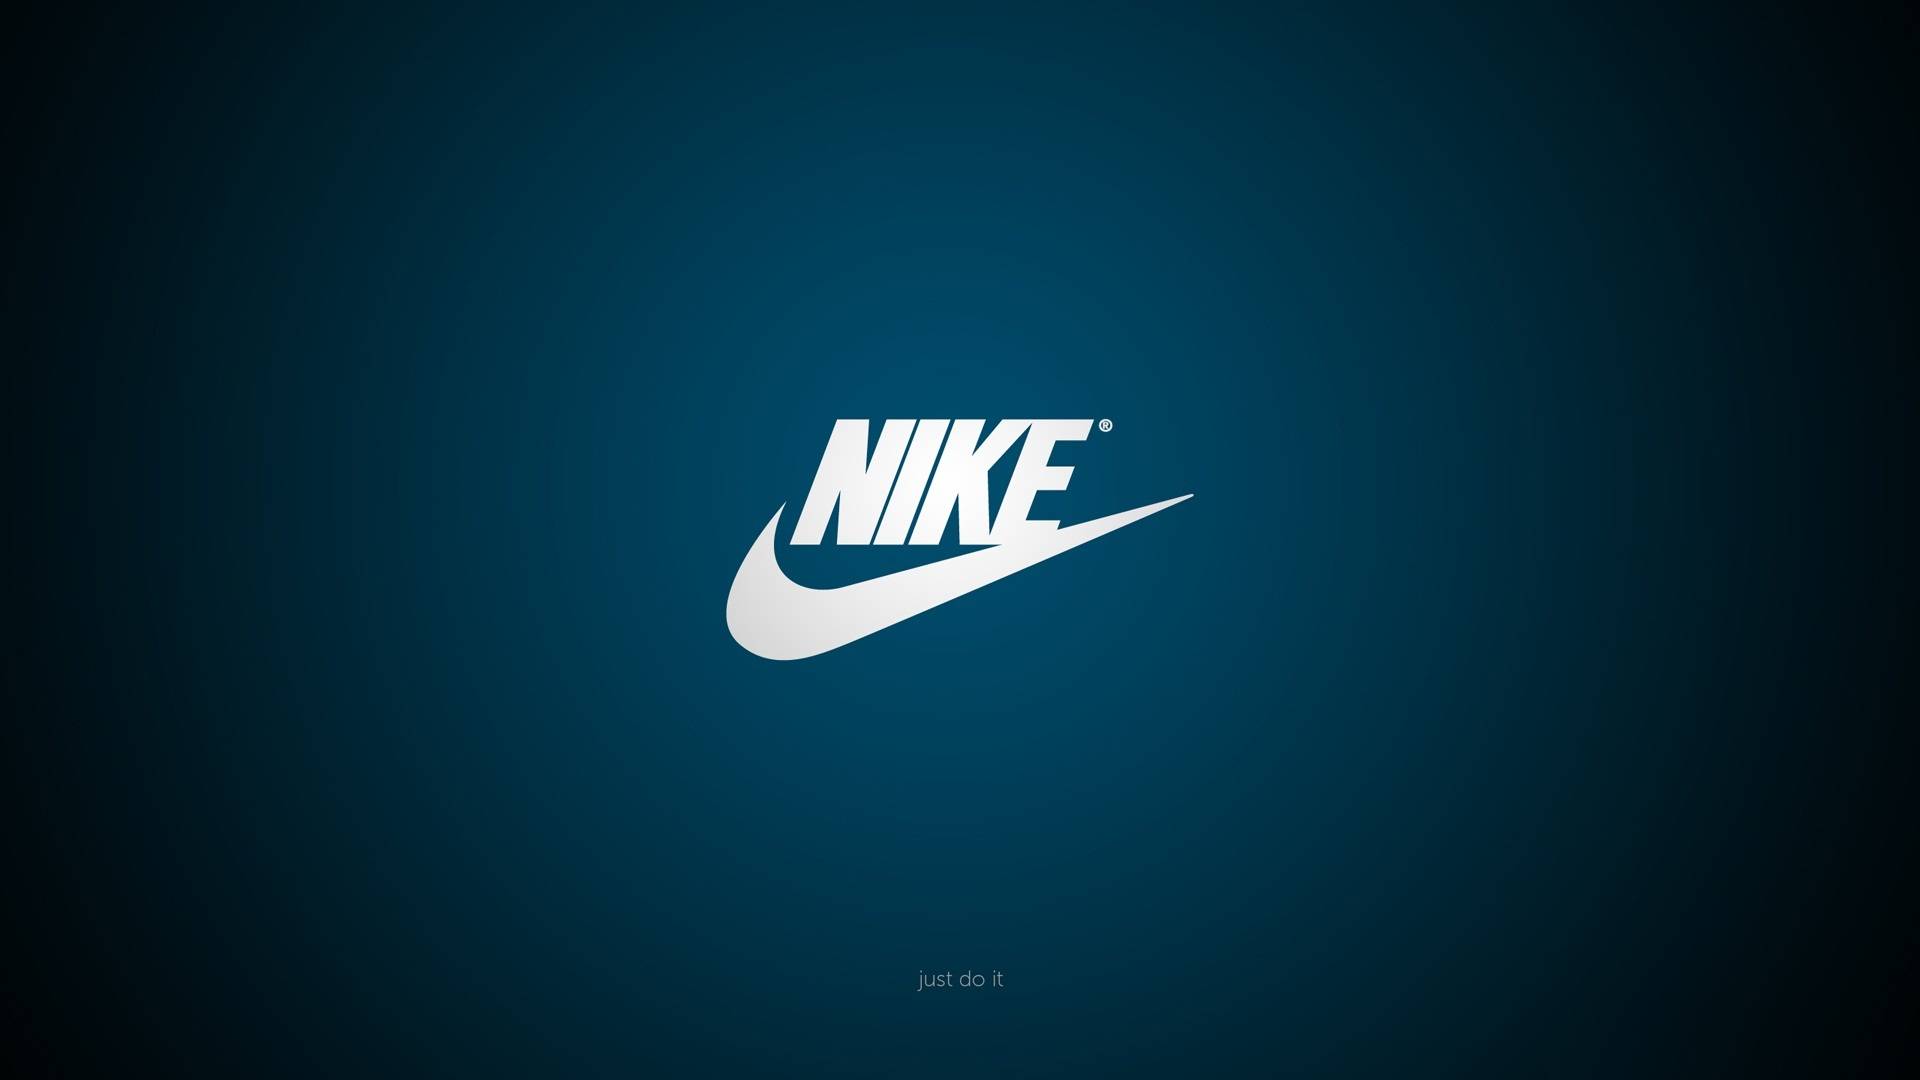 Nike 2013 shoes grouplbglagpjag   Nike Wallpaper